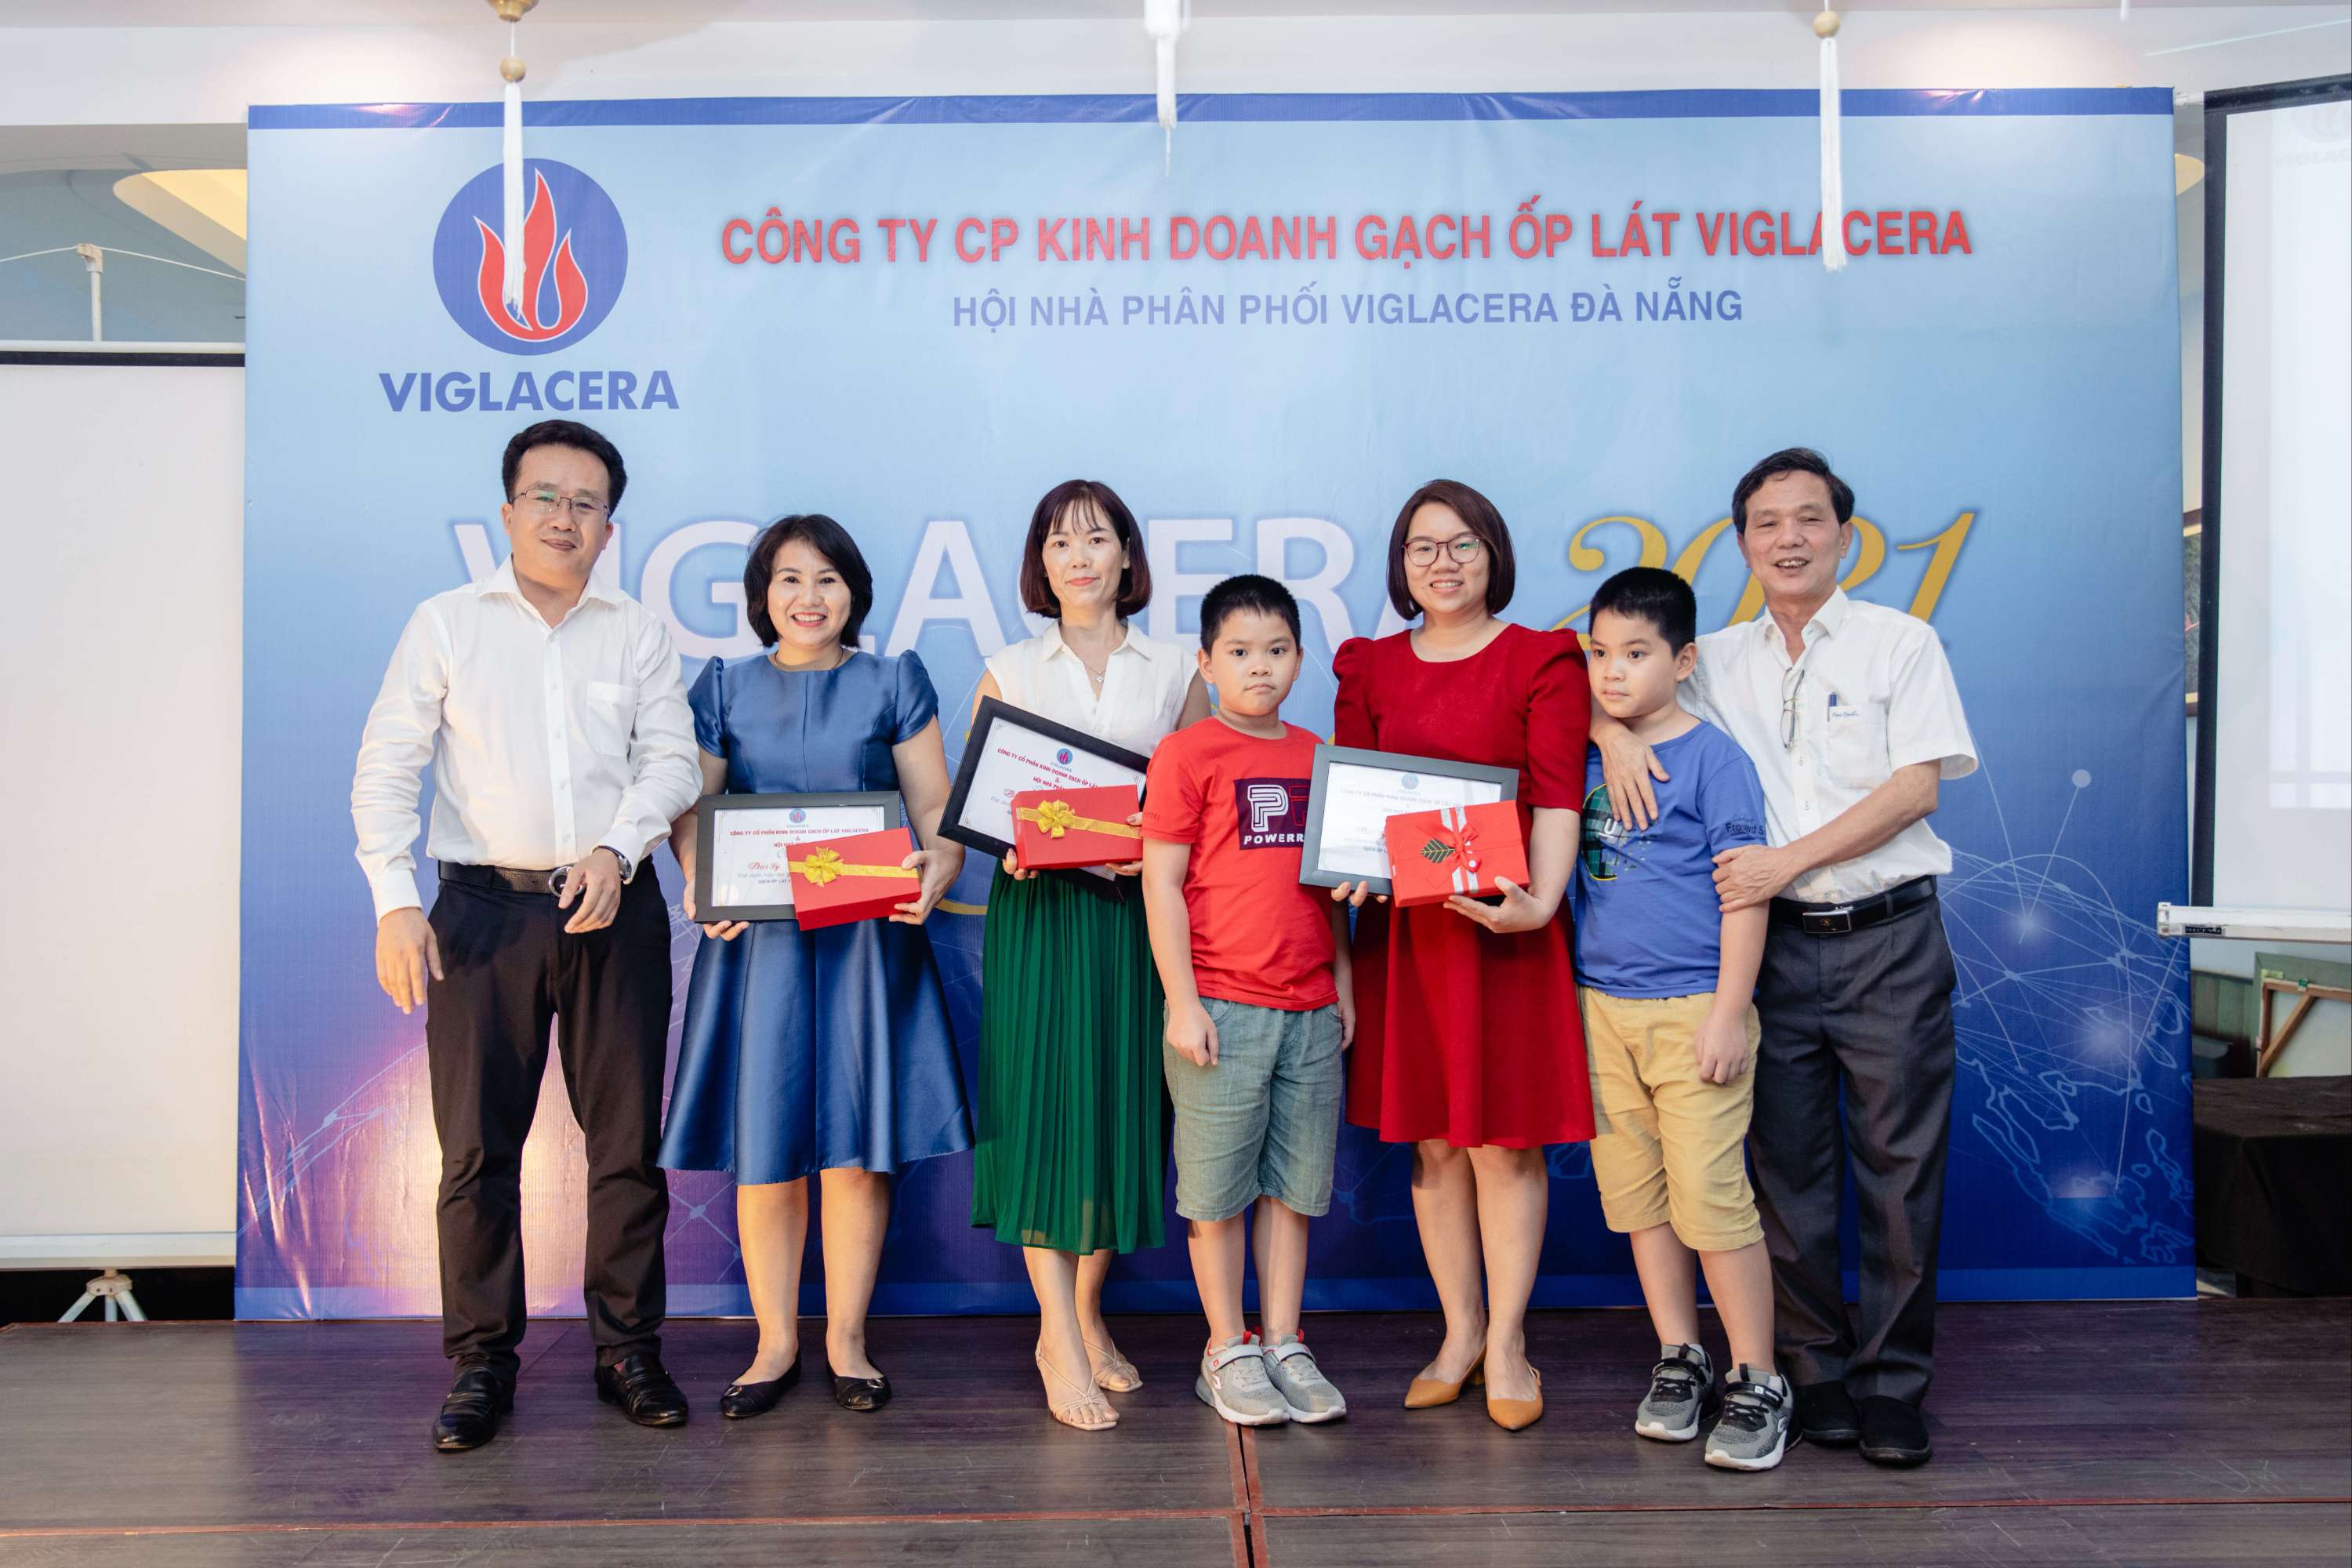 Viglacera vinh danh và trao thưởng nhiều đại lý và cửa hàng cấp 2 xuất sắc tại Đà Nẵng – Quảng Nam